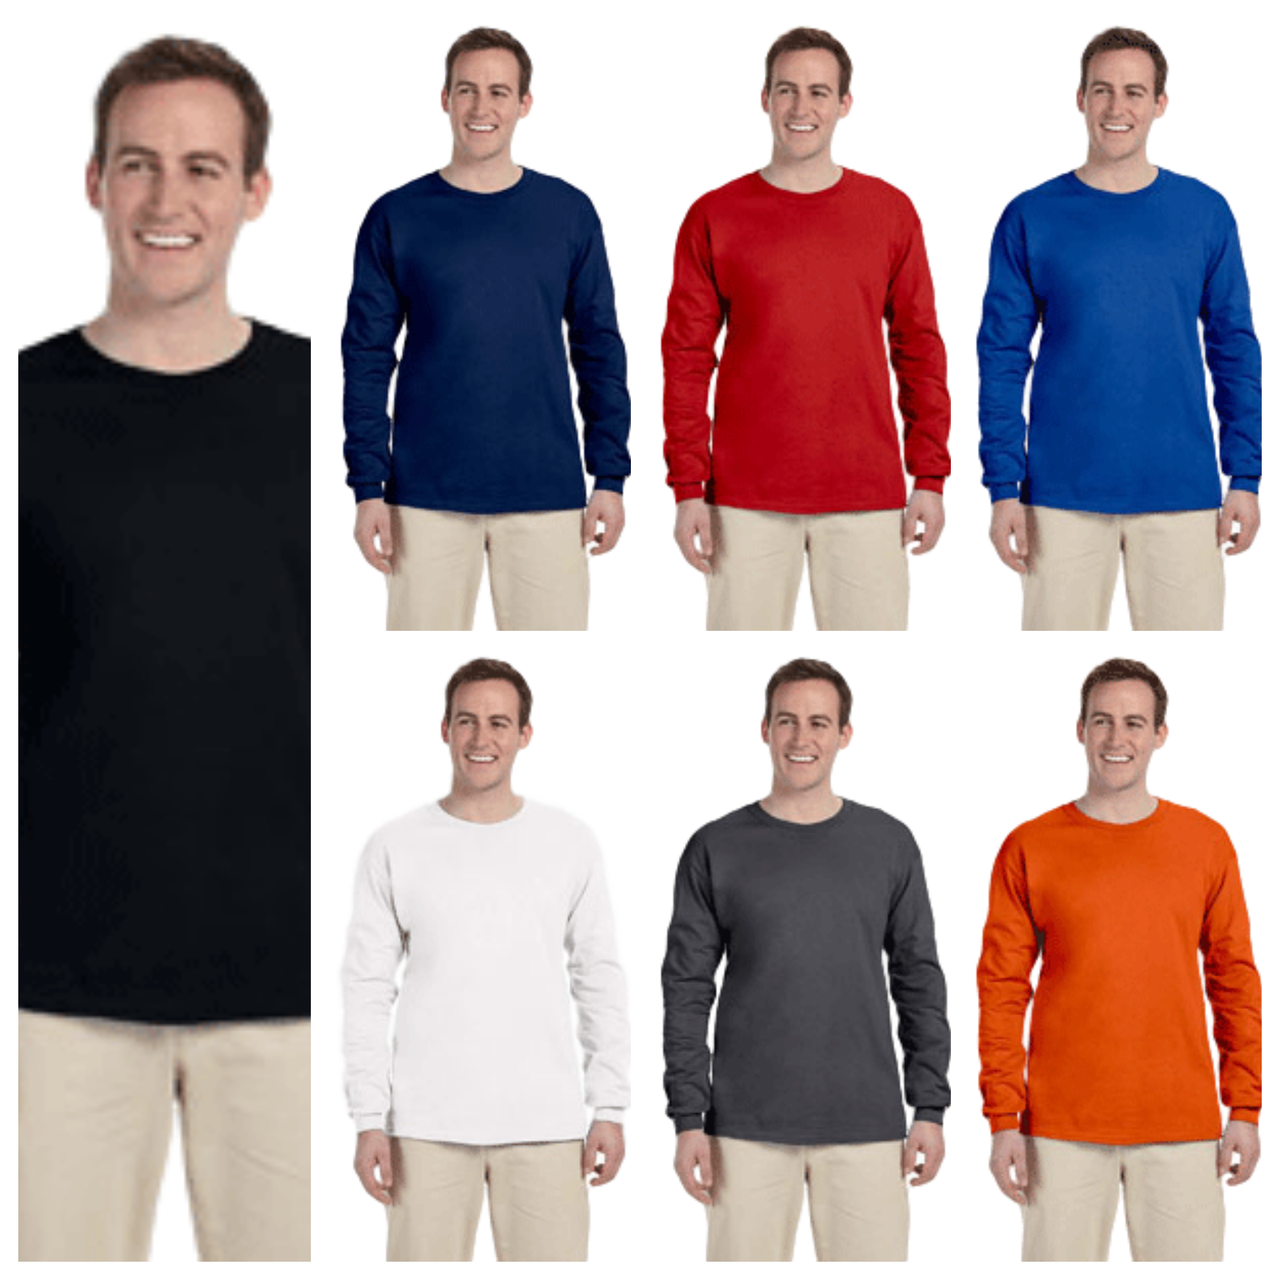 Gildan Ultra Cotton Long Sleeve T-Shirt for Men